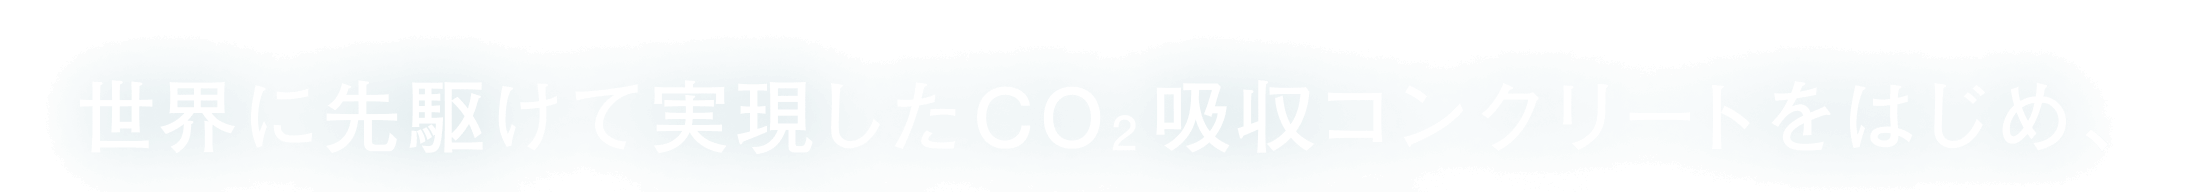 世界に先駆けて実現したCO2吸収コンクリートをはじめ、